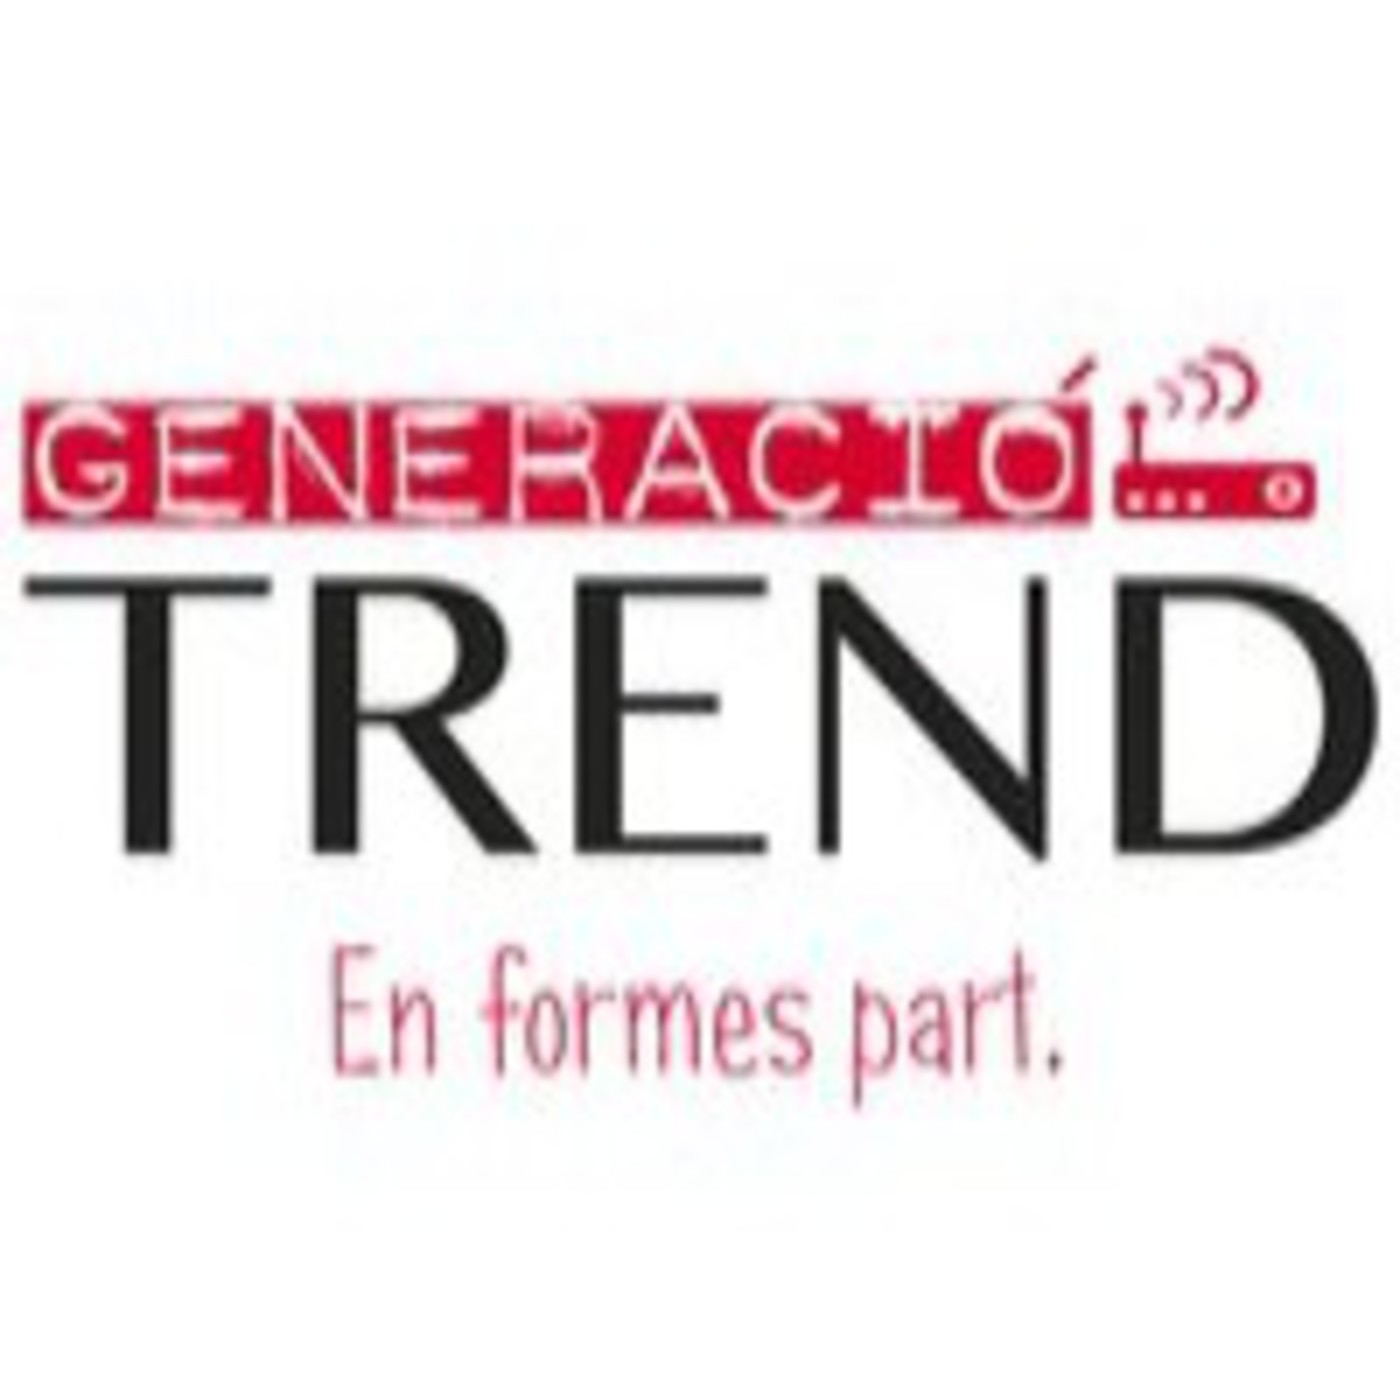 Generació TREND - 22/10/2014